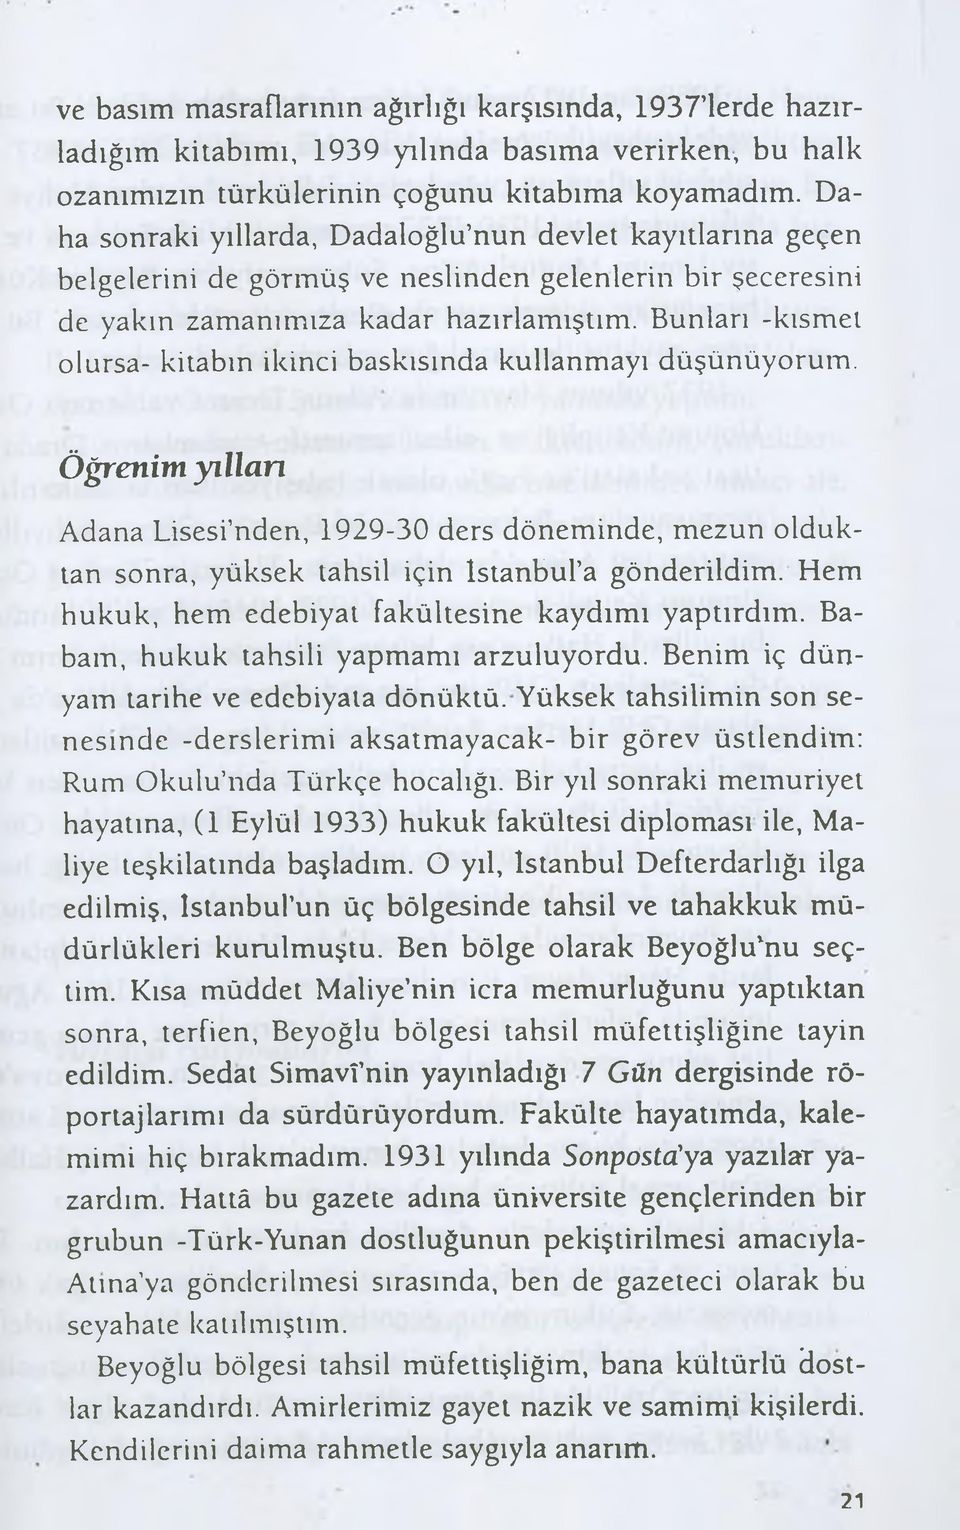 Bunları -kısmet olursa- kitabın ikinci baskısında kullanmayı düşünüyorum. Öğrenim yıllan Adana Lisesi nden, 1929-30 ders döneminde, mezun olduktan sonra, yüksek tahsil için İstanbul a gönderildim.